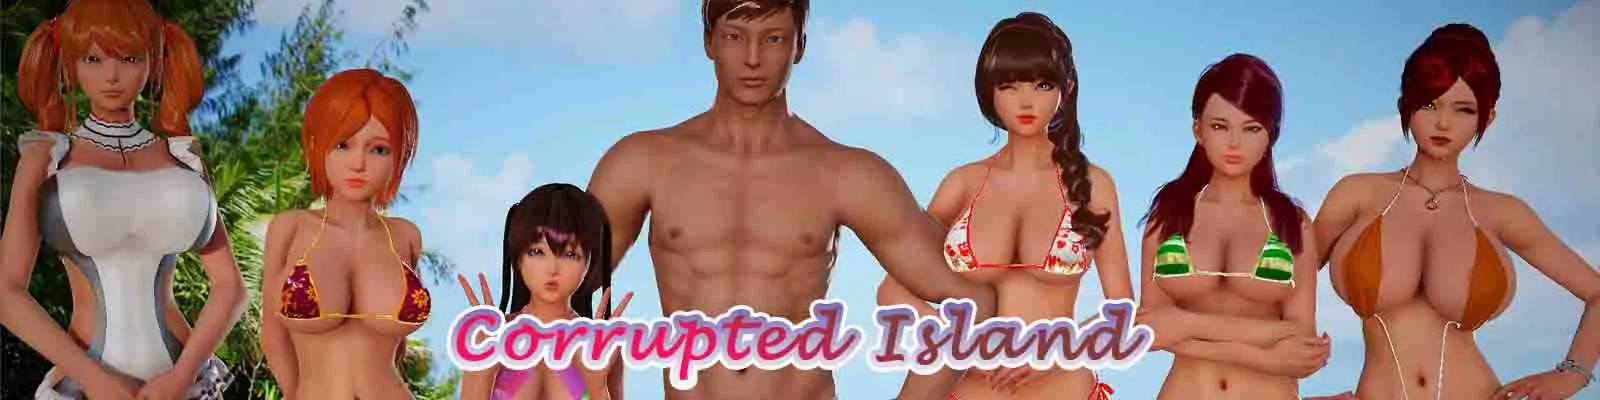 Corrupted Island 3d gioco del sesso, gioco porno, gioco xxx